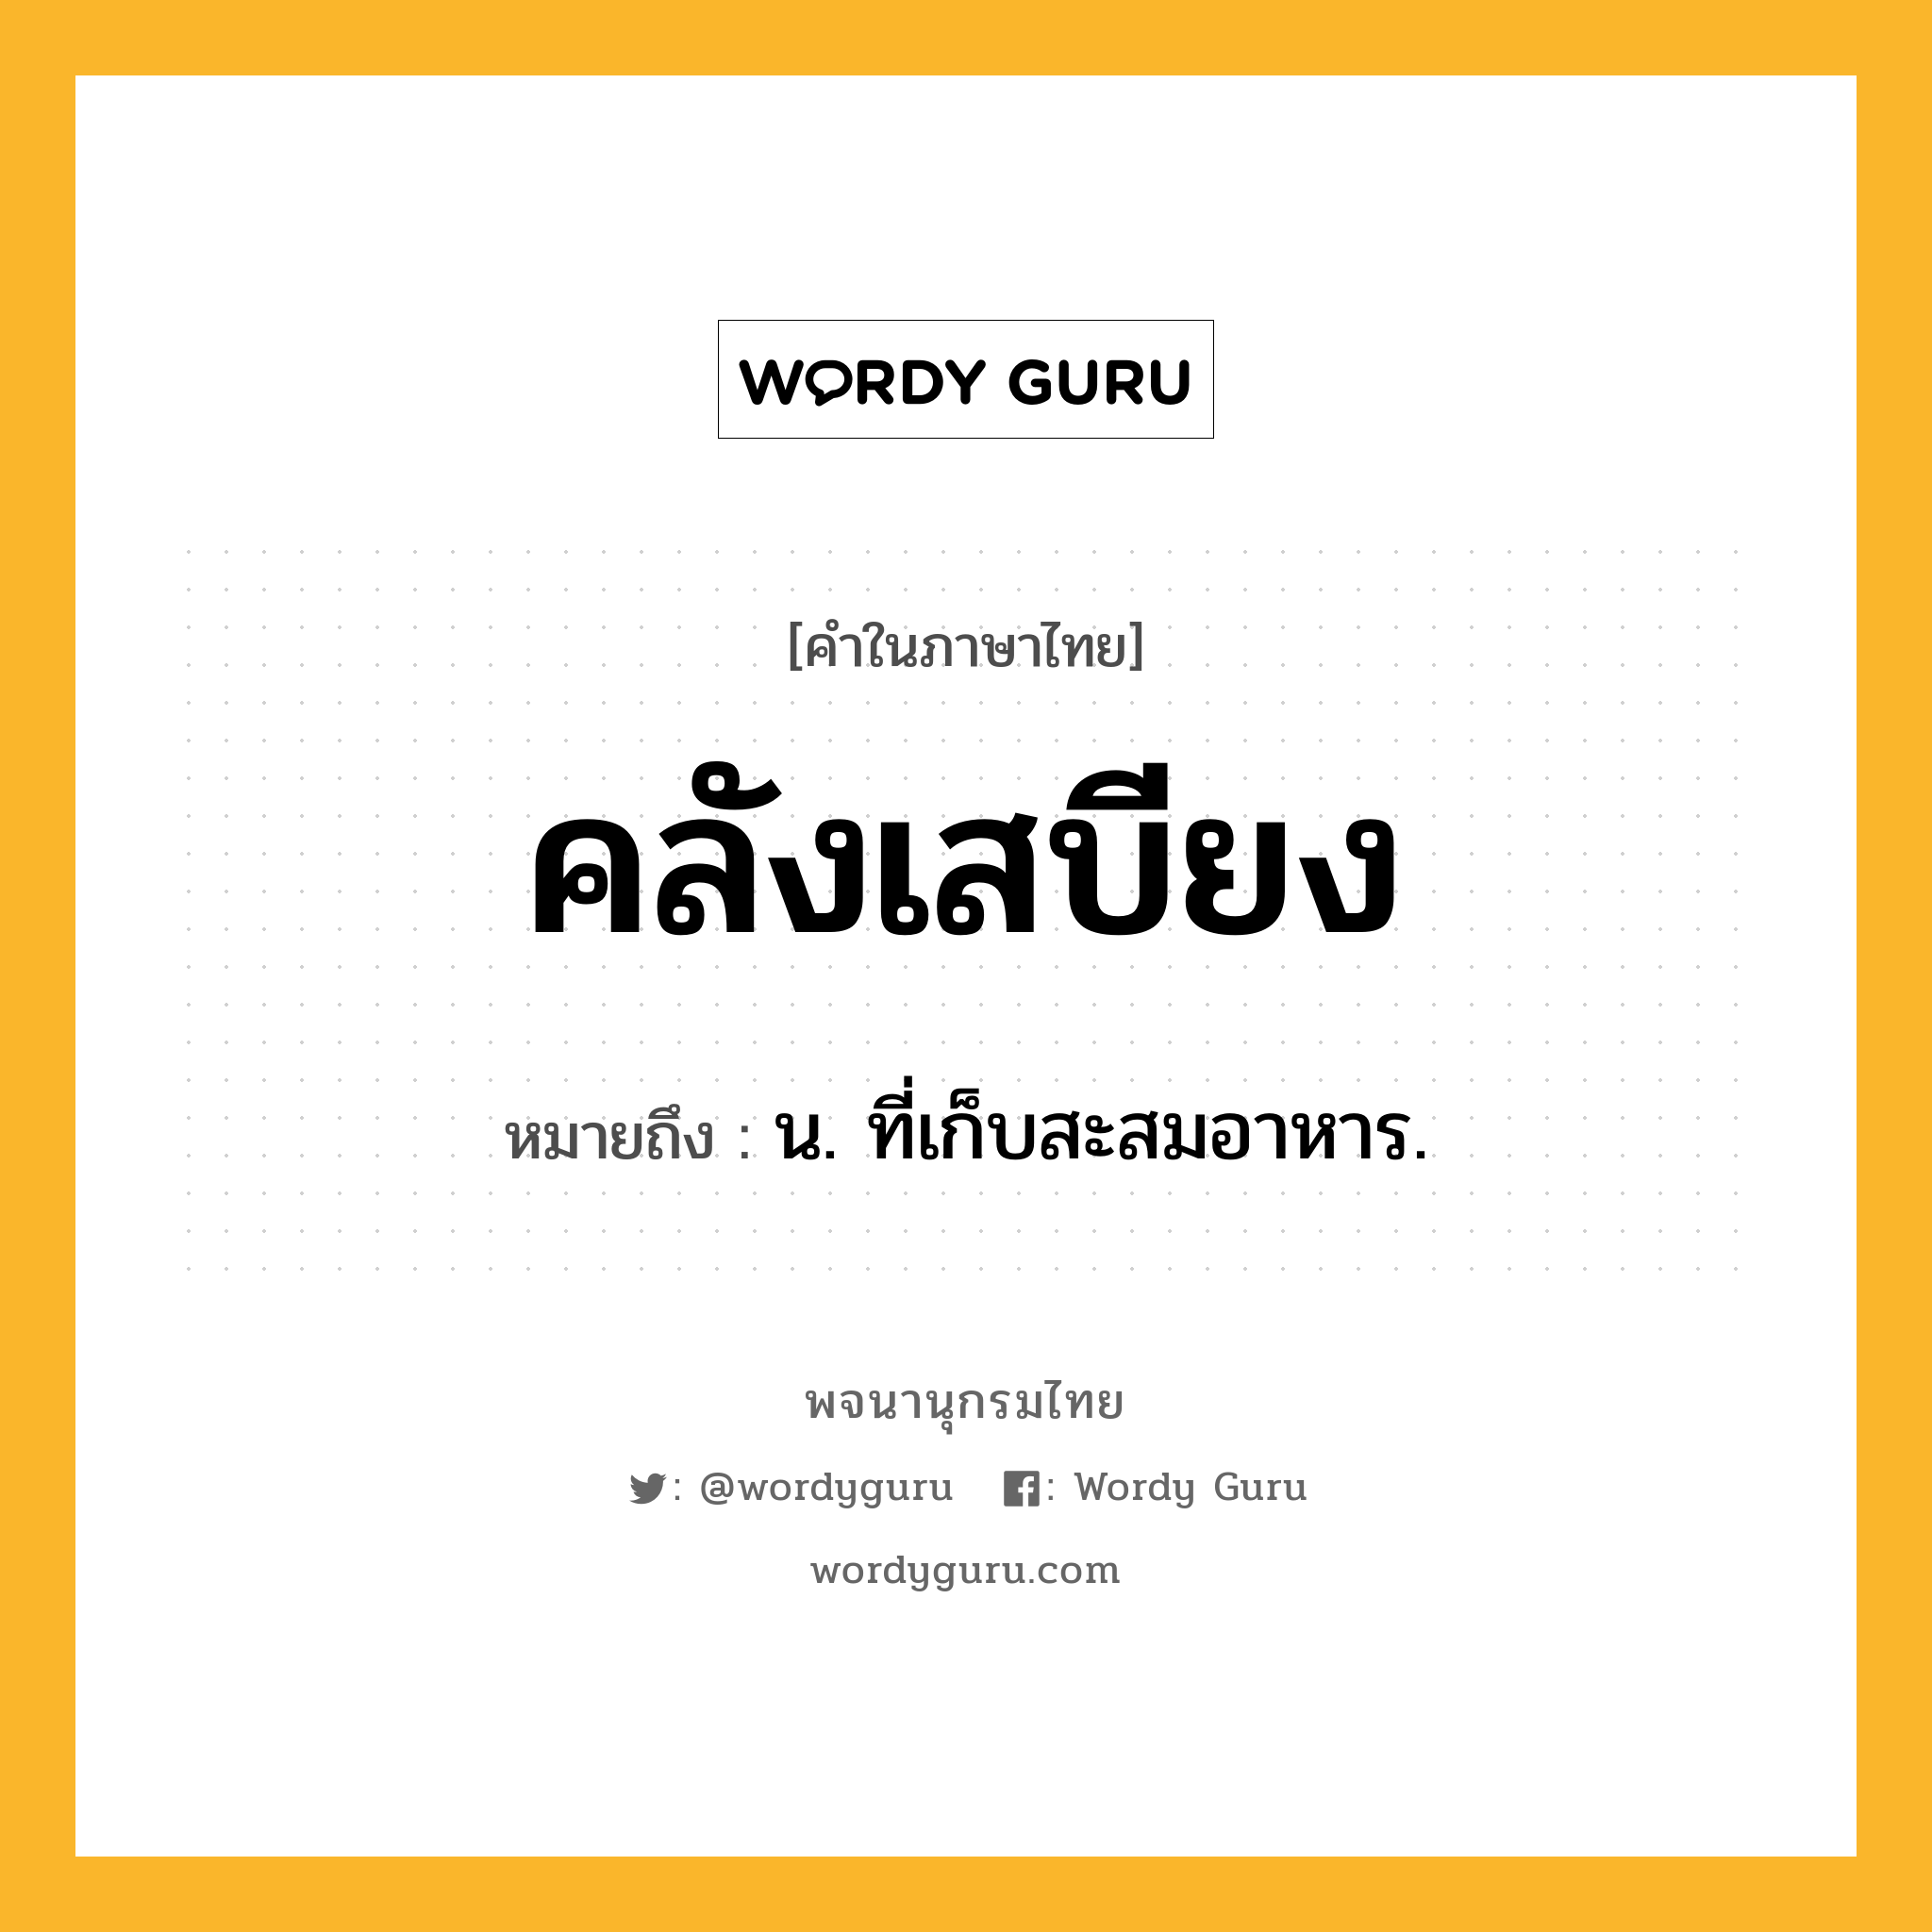 คลังเสบียง ความหมาย หมายถึงอะไร?, คำในภาษาไทย คลังเสบียง หมายถึง น. ที่เก็บสะสมอาหาร.